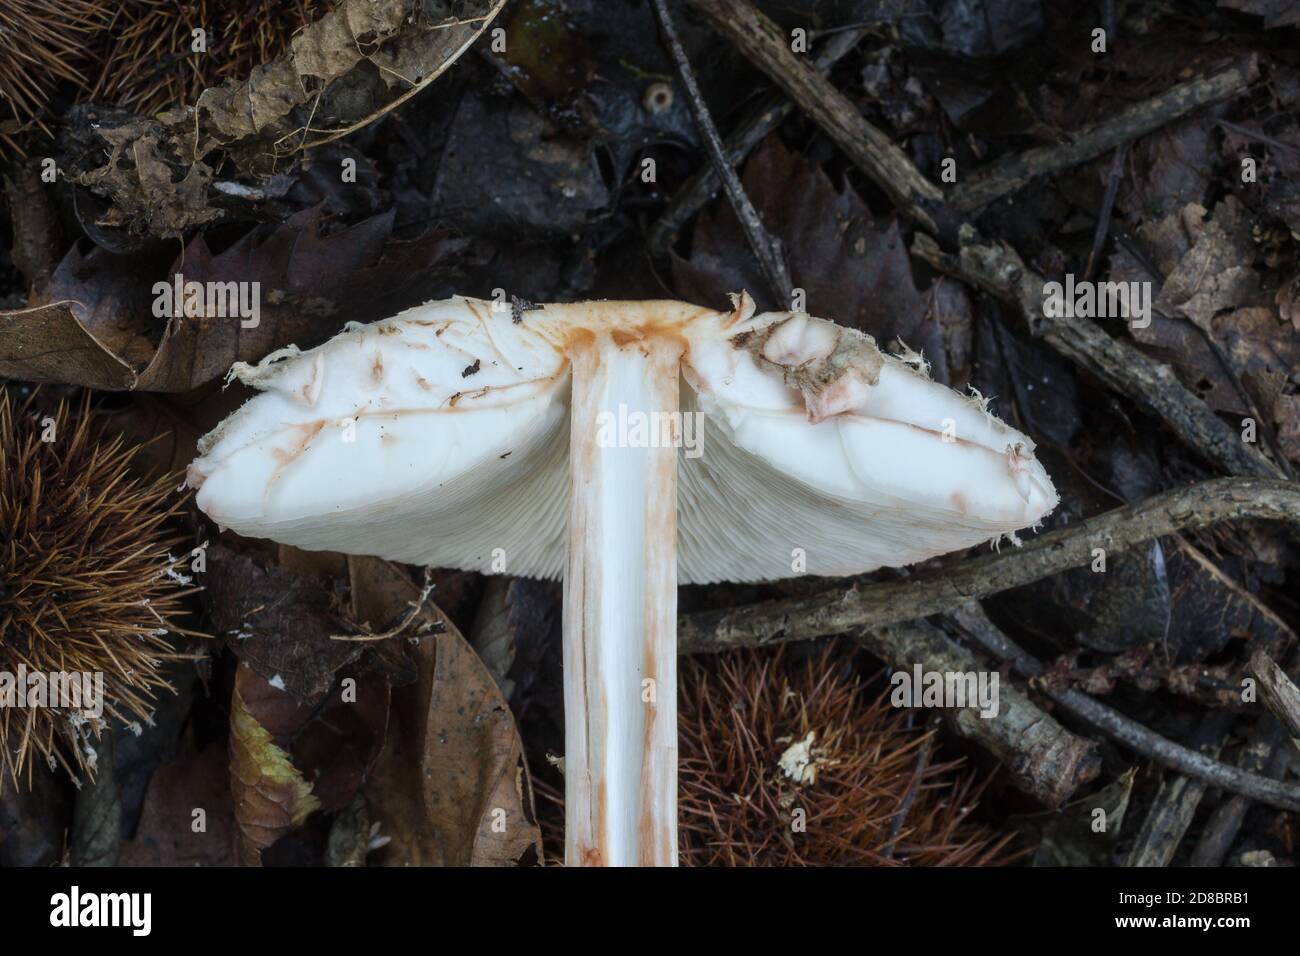 Una sezione trasversale del fungo del parasolo o procera del macrolepiota. Le branchie non sono attaccate allo stelo e lo stelo è parzialmente cavo. Foto Stock